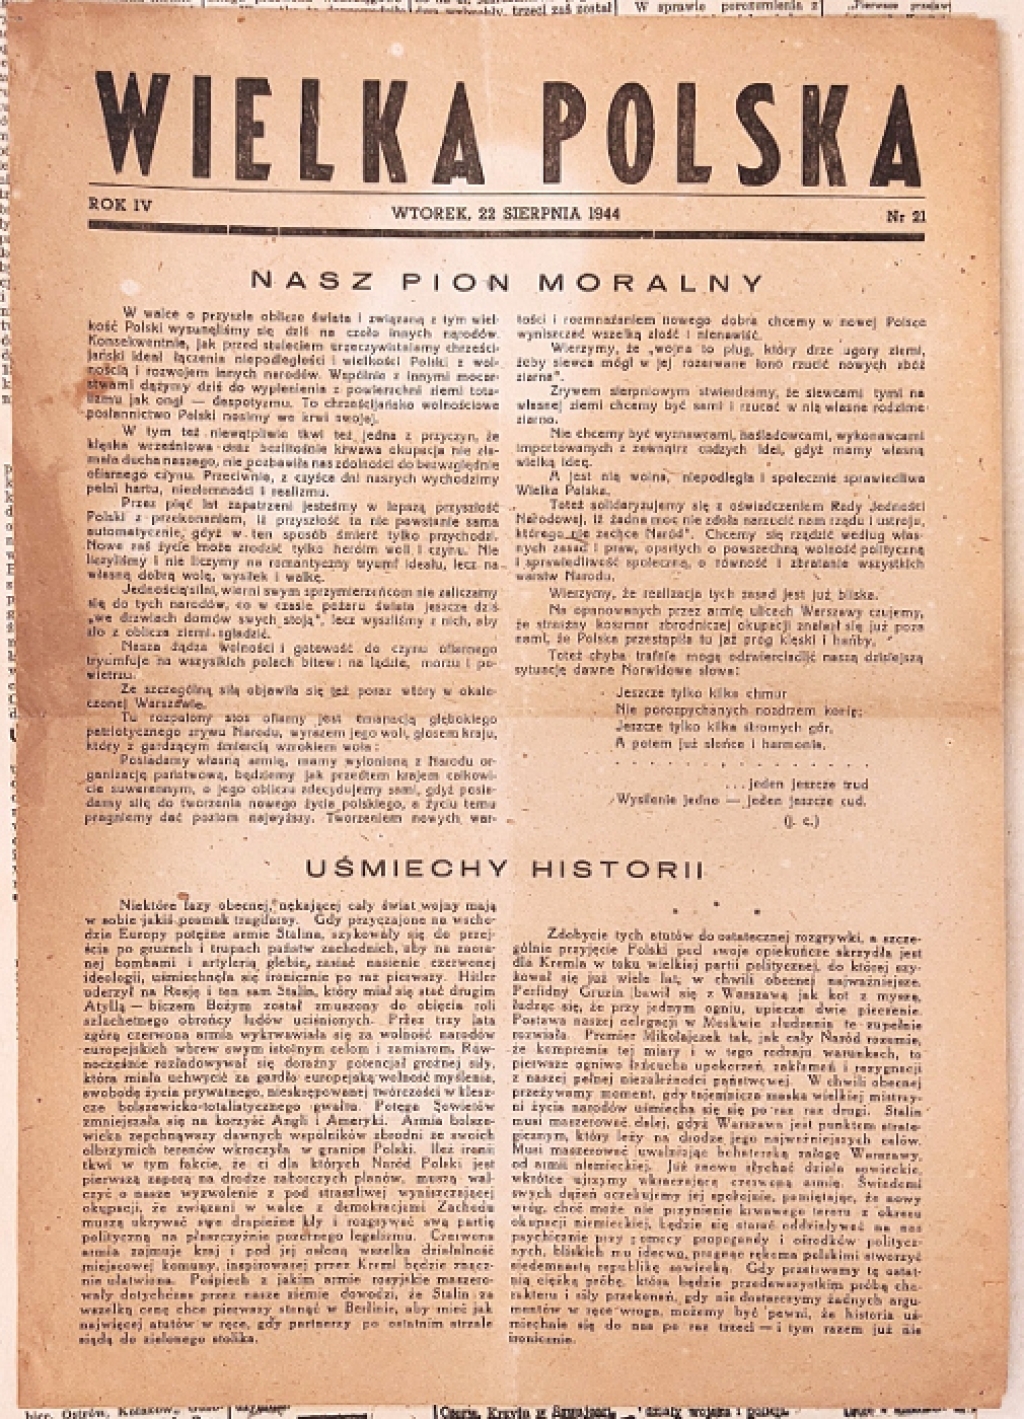 [prasa konspiracyjna z okresu Powstania Warszawskiego] Wielka Polska, 22 sierpnia 1944 (rok IV, nr 21)